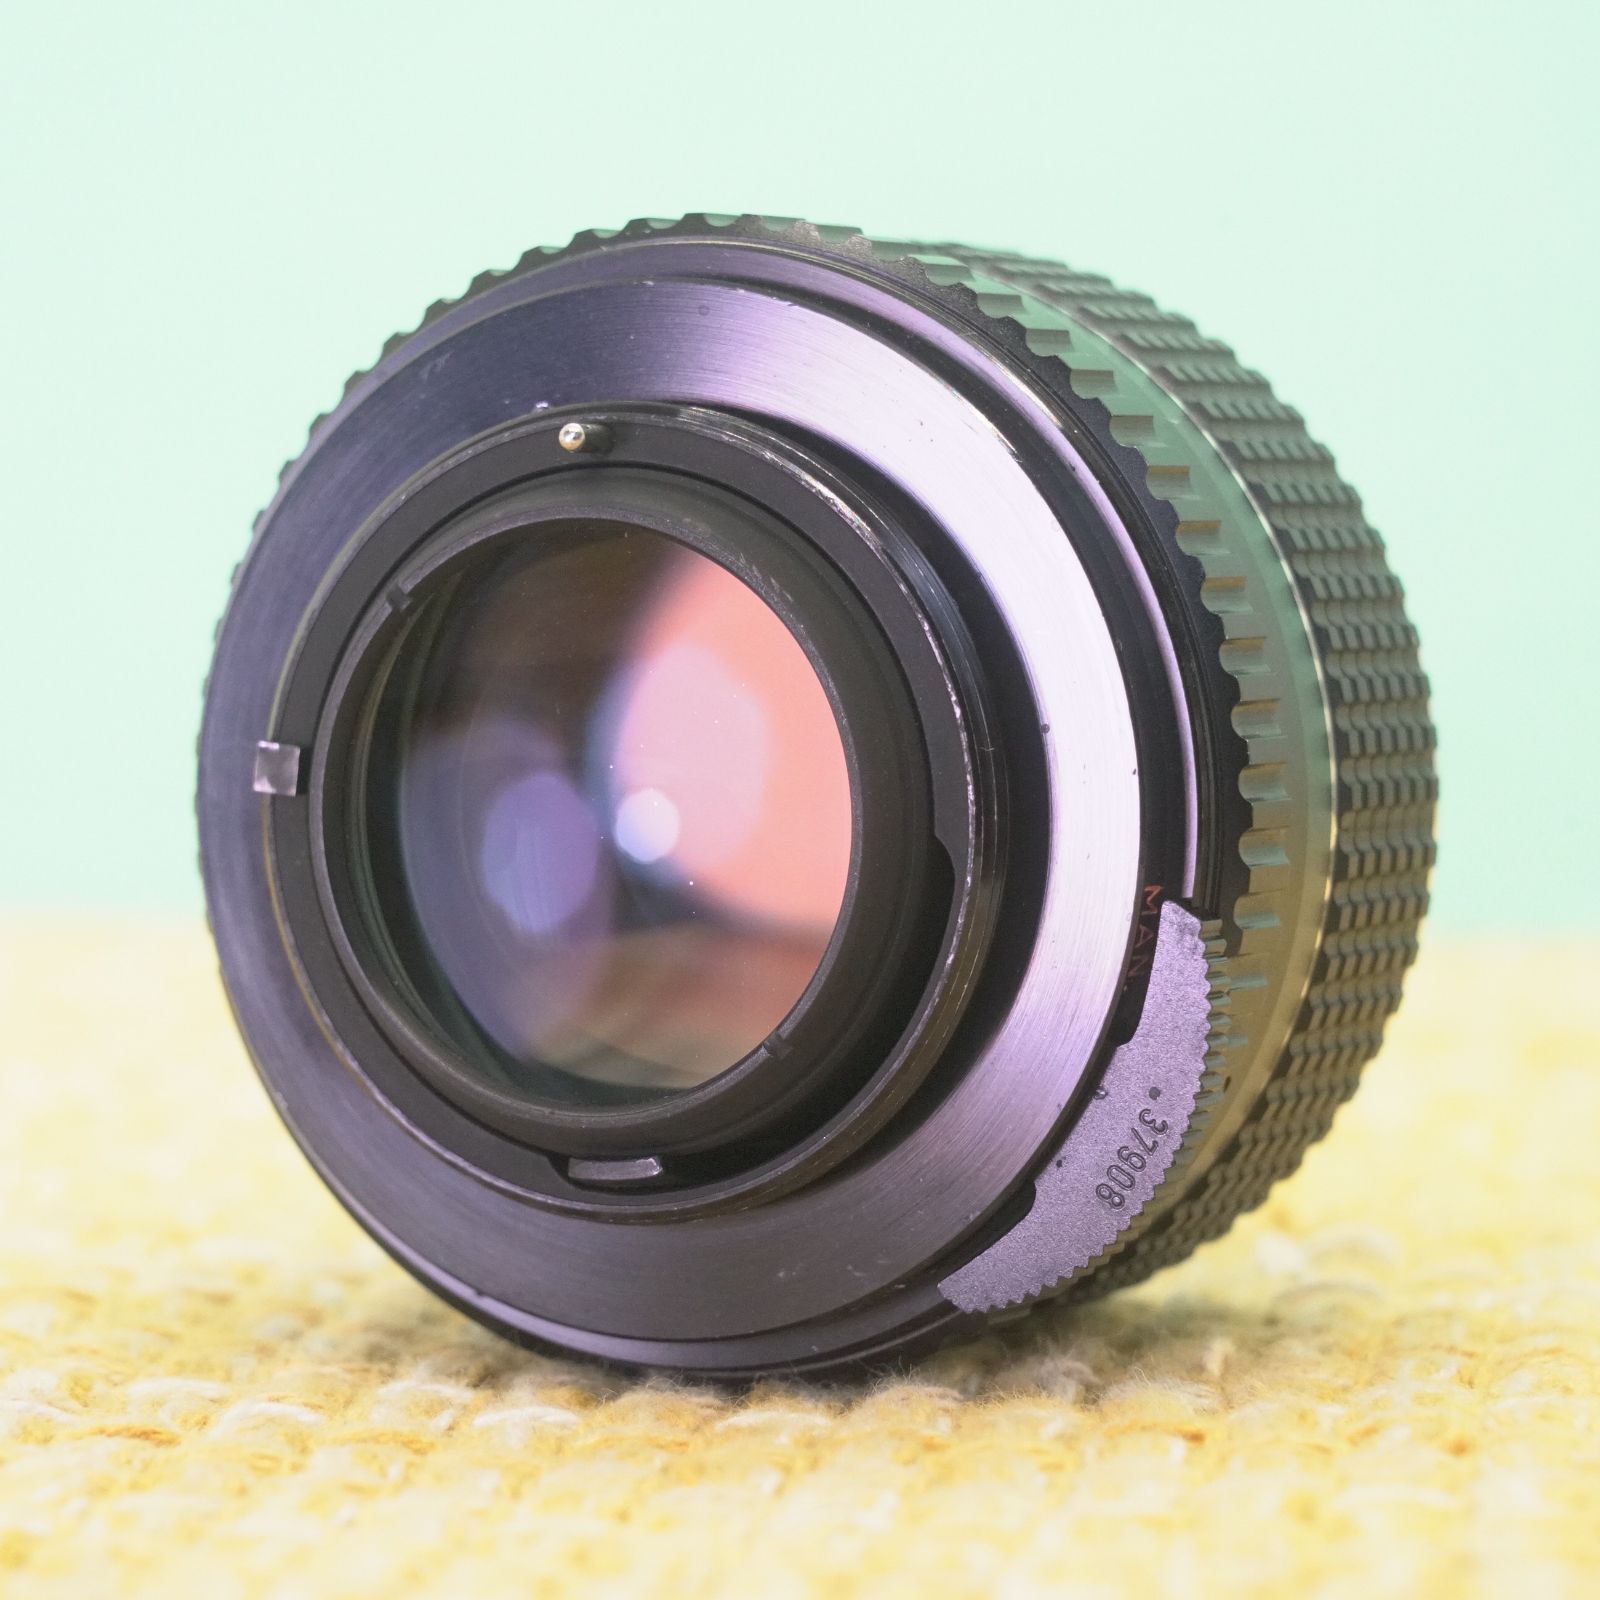 SMC TAKUMAR 50mm f1.4 オールドレンズ フード付 #579 - レンズ(単焦点)